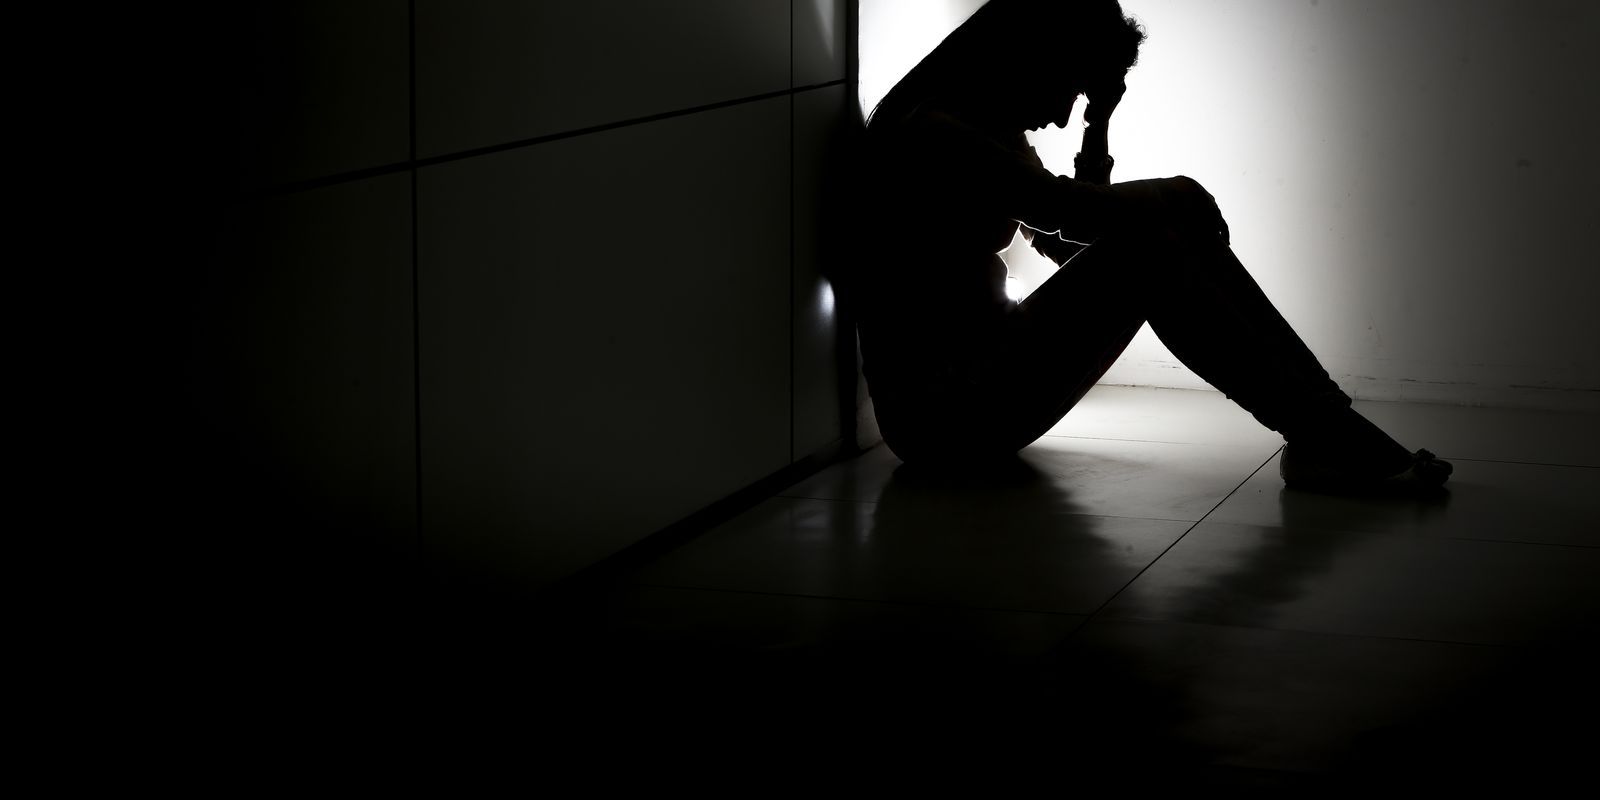 Saúde mental e o tabu de sofrer calado - 